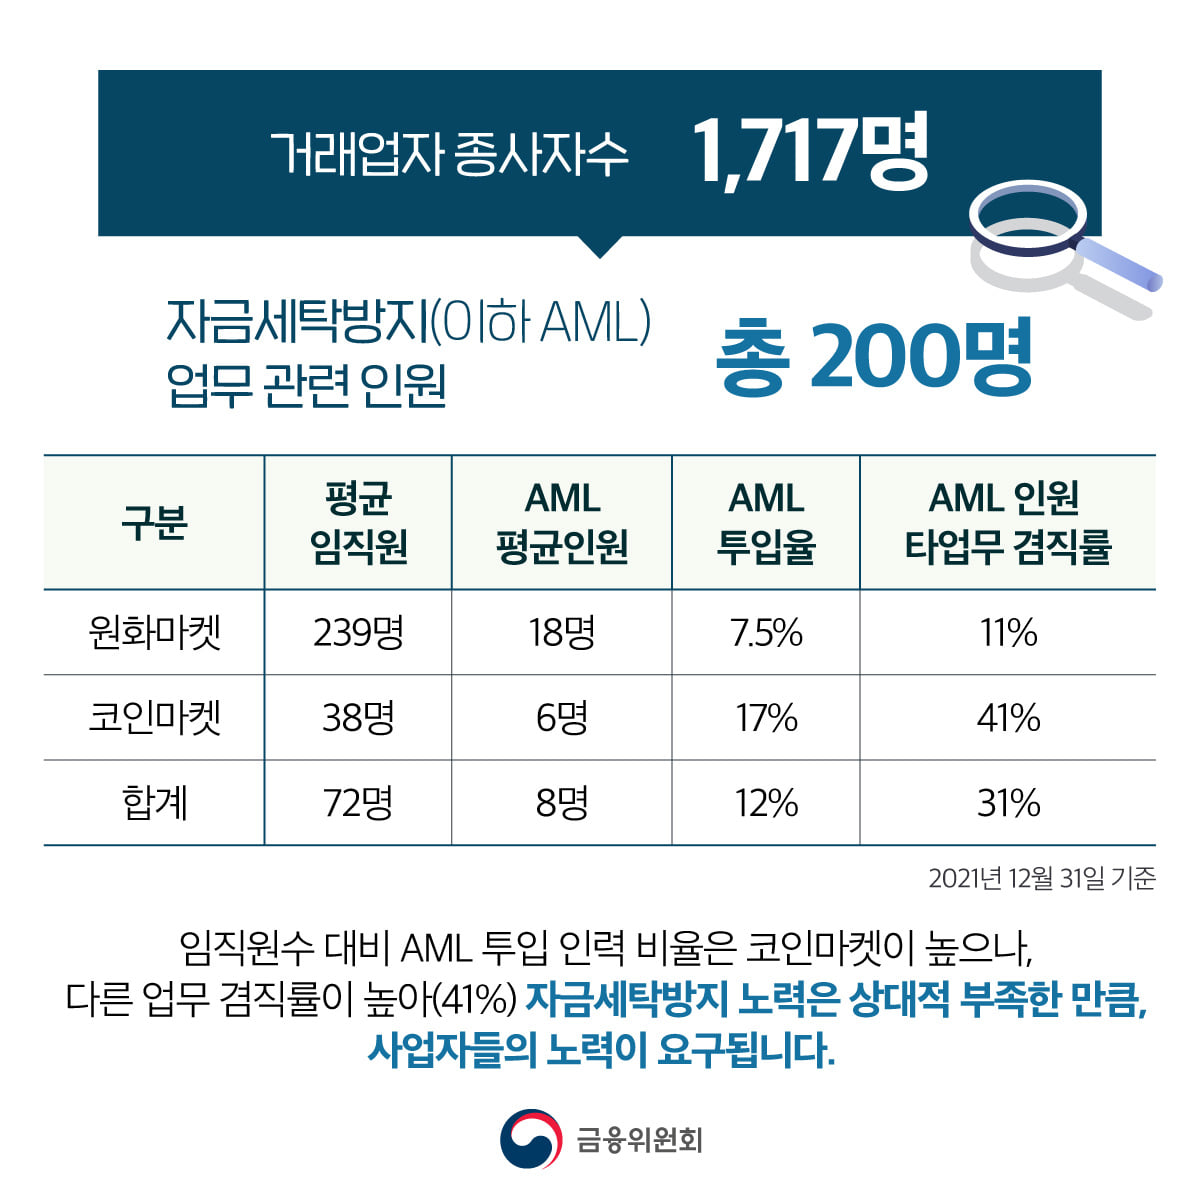 ●거래업자 종사자수 : 1,717명 ●자금세탁방지(이하 AML) 업무 관련 인원 : 총 200명 - 원화마켓 : 평균 임직원(239명), AML 평균인원(18명), AML 투입율(7.5%), AML 인원 타업무 겸직률(11%) - 코인마켓 : 평균 임직원(38명), AML 평균인원(6명), AML 투입율(17%), AML 인원 타업무 겸직률(41%) - 합계 : 평균 임직원(72명), AML 평균인원(8명), AML 투입율(12%), AML 인원 타업무 겸직률(31%) 임직원수 대비 AML 투입 인력 비율은 코인마켓이 높으나, 다른 업무 겸직률이 높아(41%) 자금세탁방지 노력은 상대적 부족한 만큼, 사업자들의 노력이 요구됩니다. 